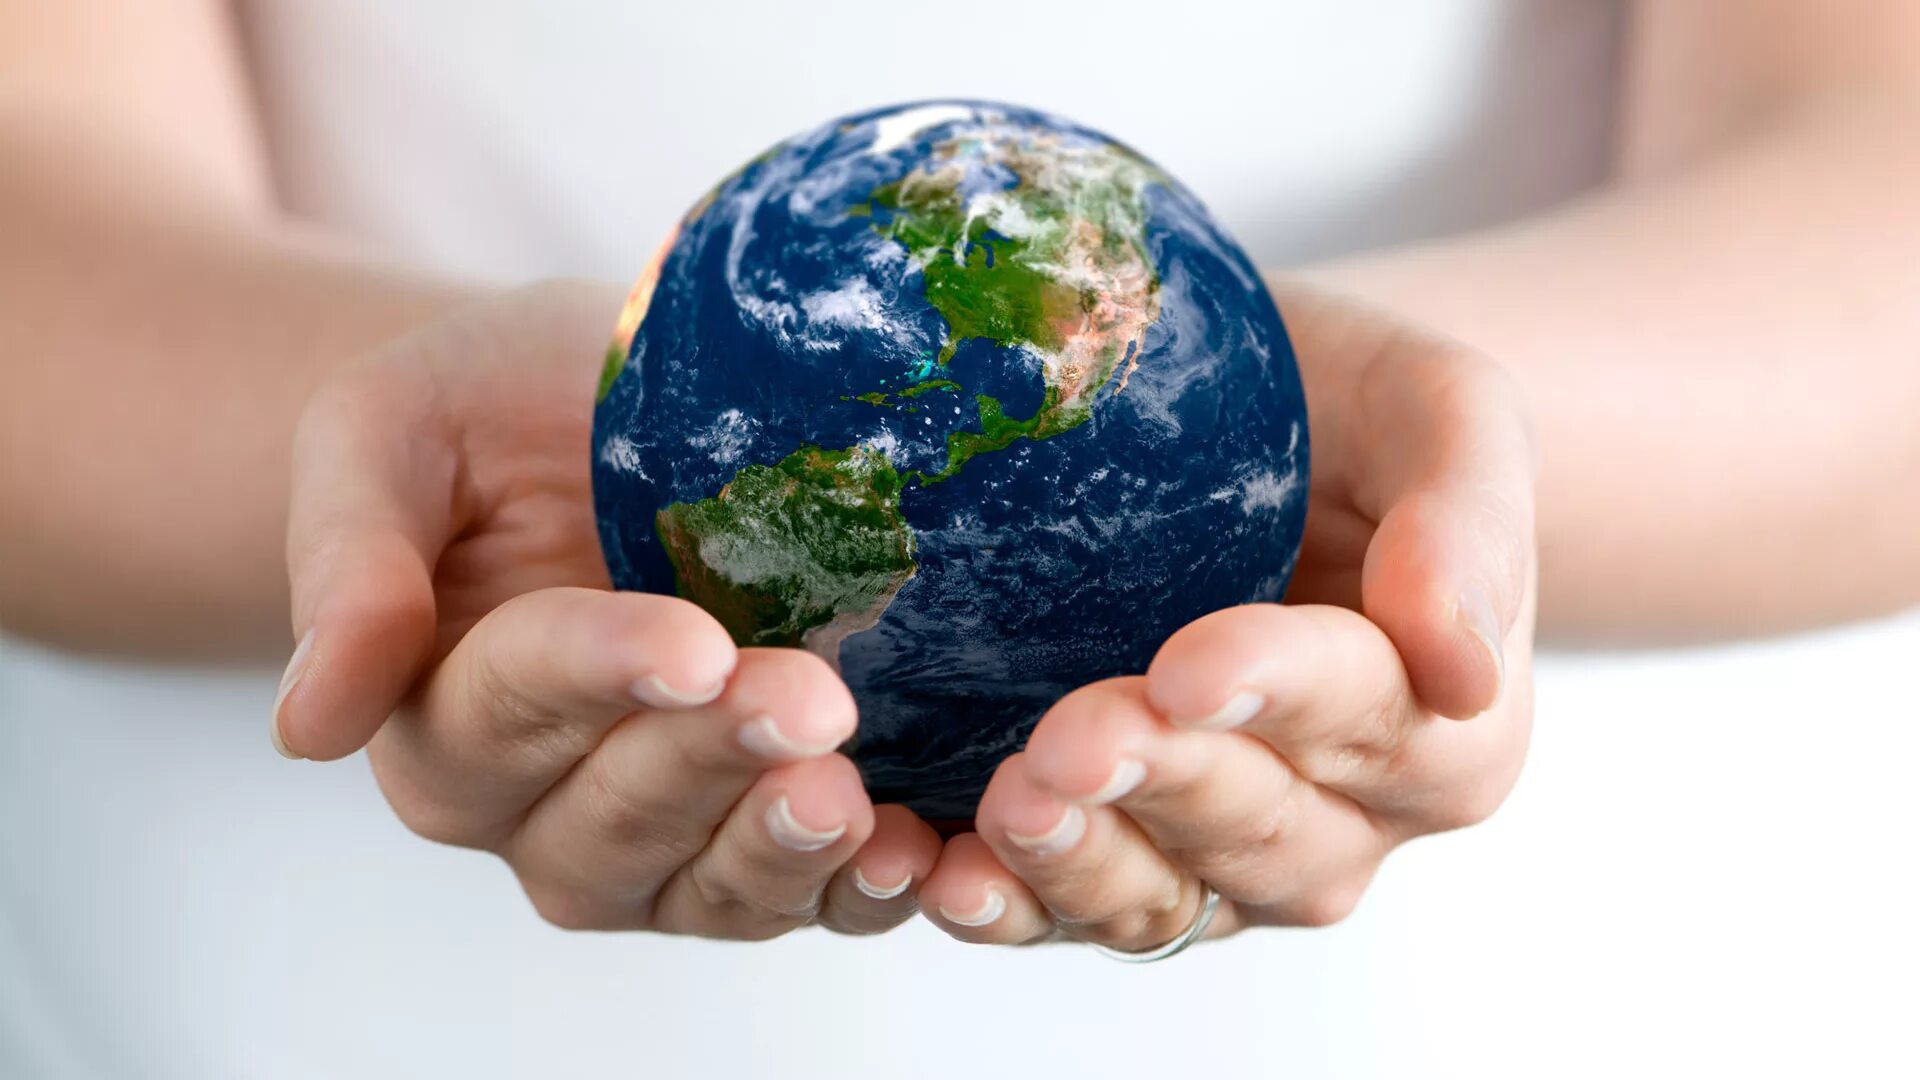 Влияние на международный мир. Экология земля в руках. Защита природы. Экологический земной шар. Будущее планеты в наших руках.